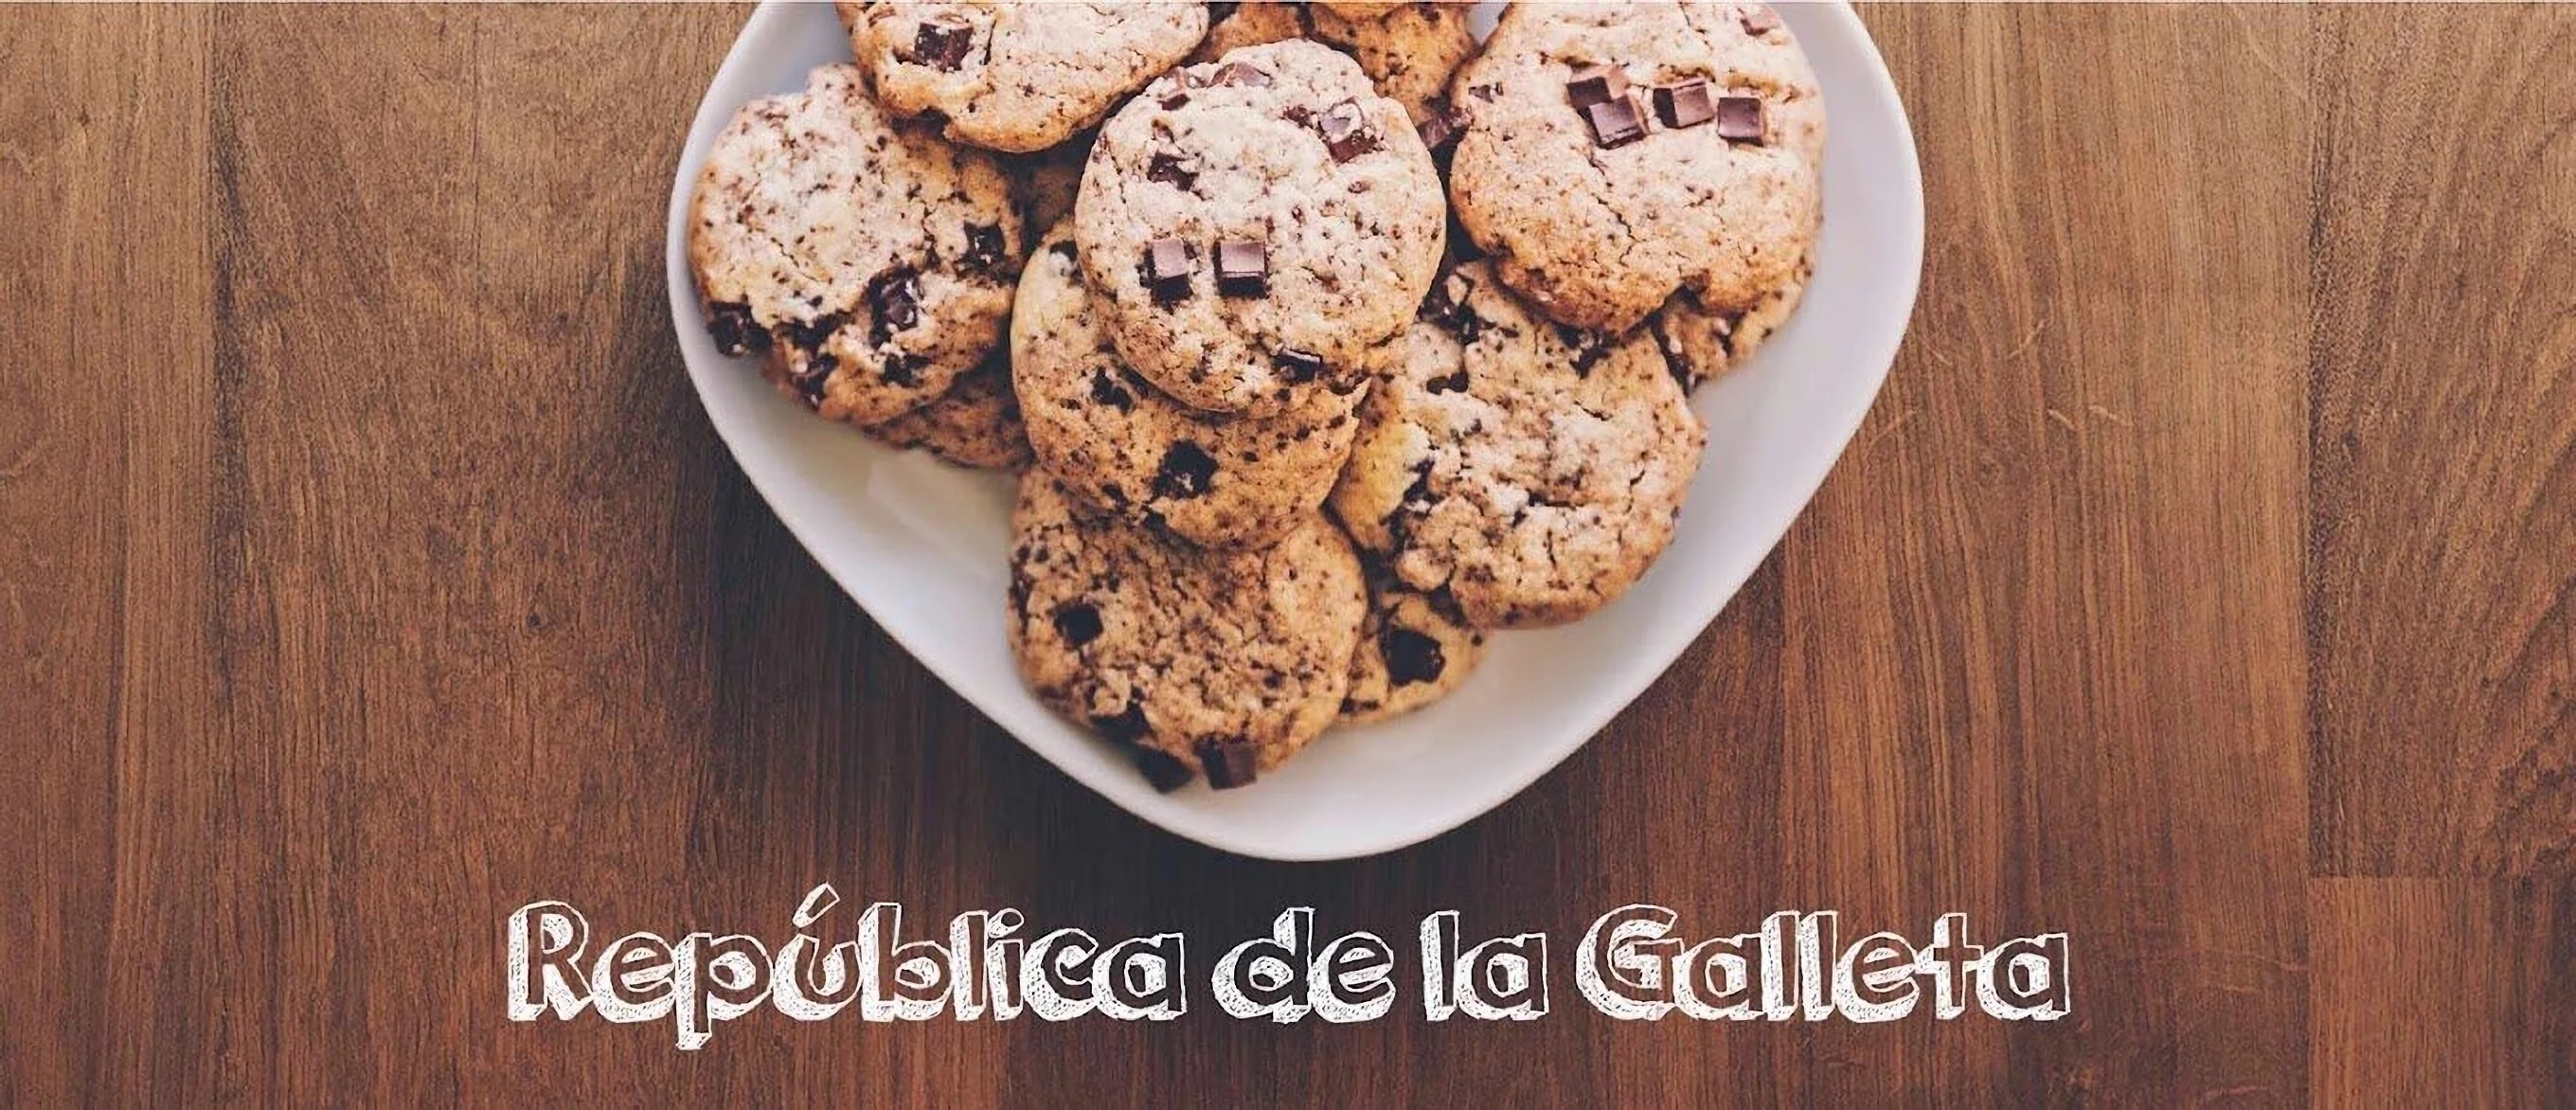 Galletas-republica-de-la-galleta-15813